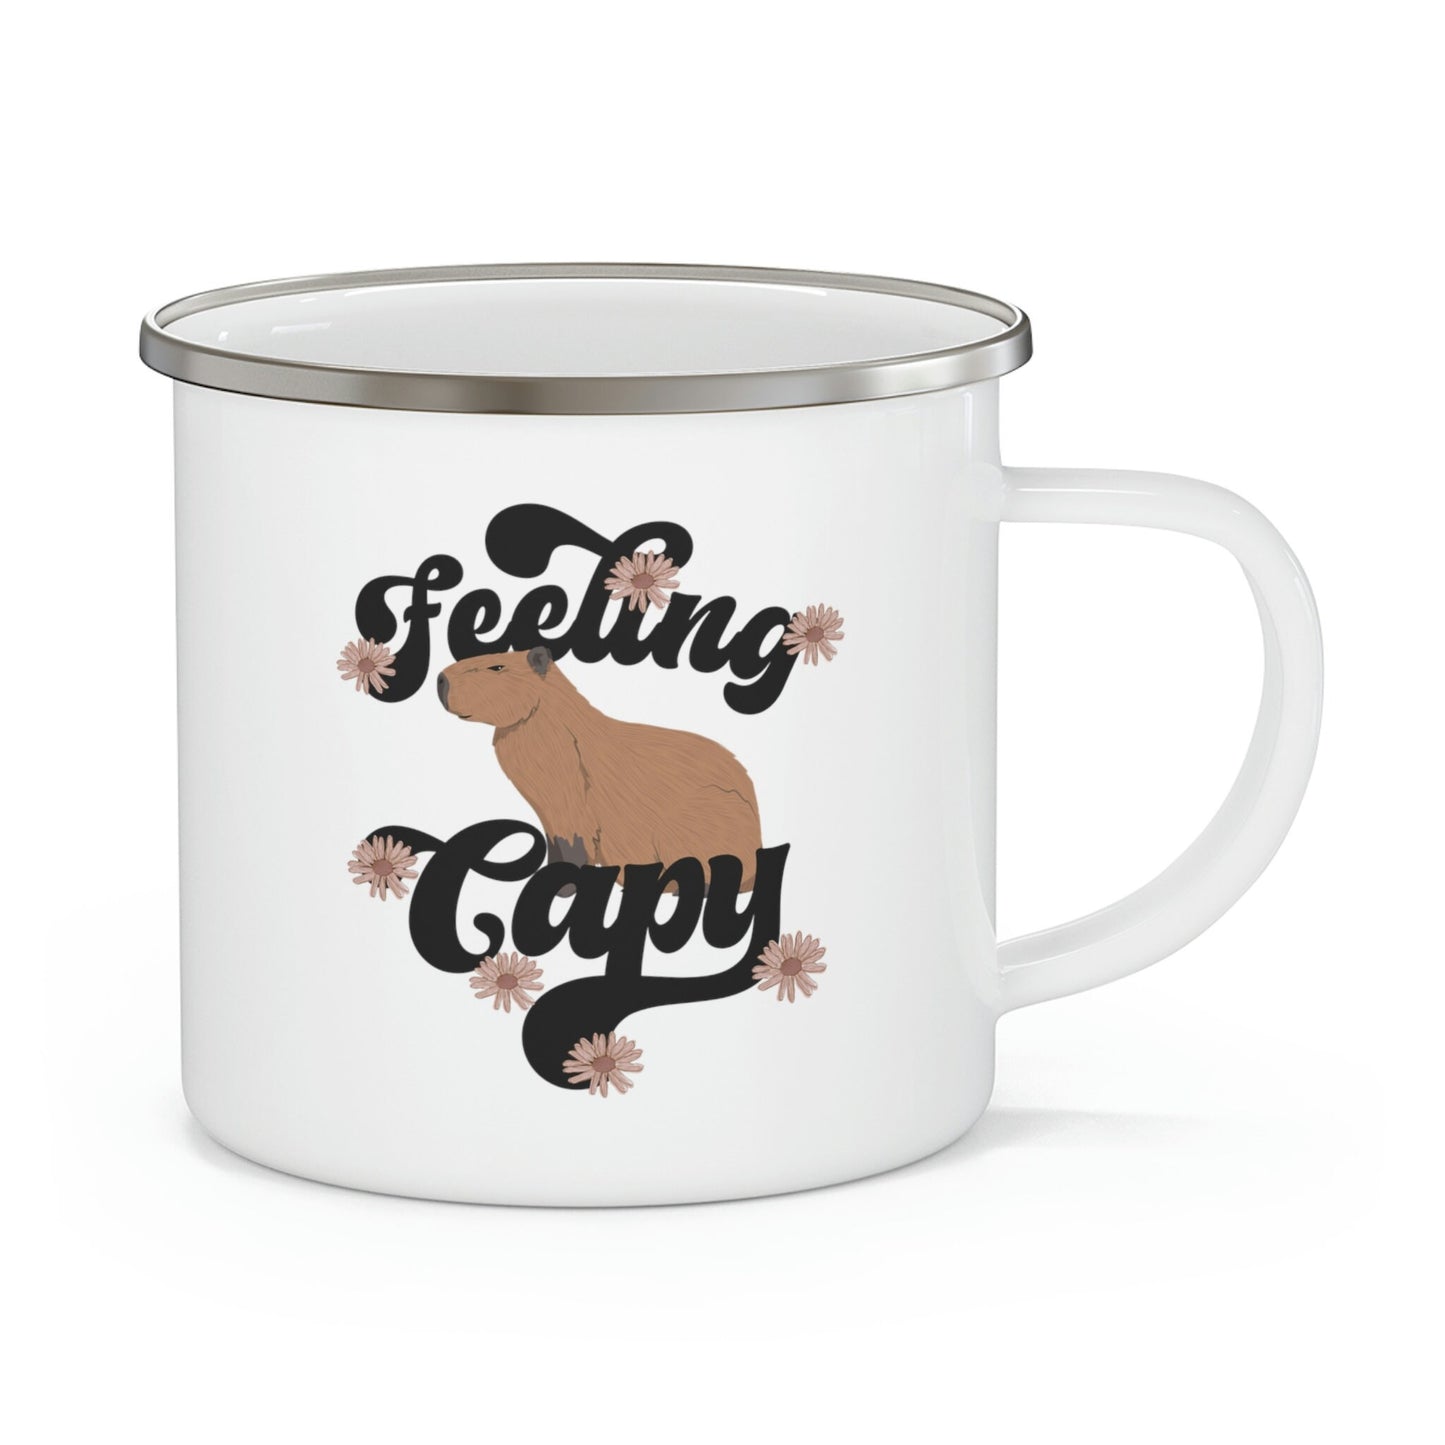 Capybara Camp Mug, Feeling Capy, Retro Capybara Mug, Capybara Gifts, Animal Lover Gift, Capybara Love, Cute Camping Mugs, Cute Animal Mugs